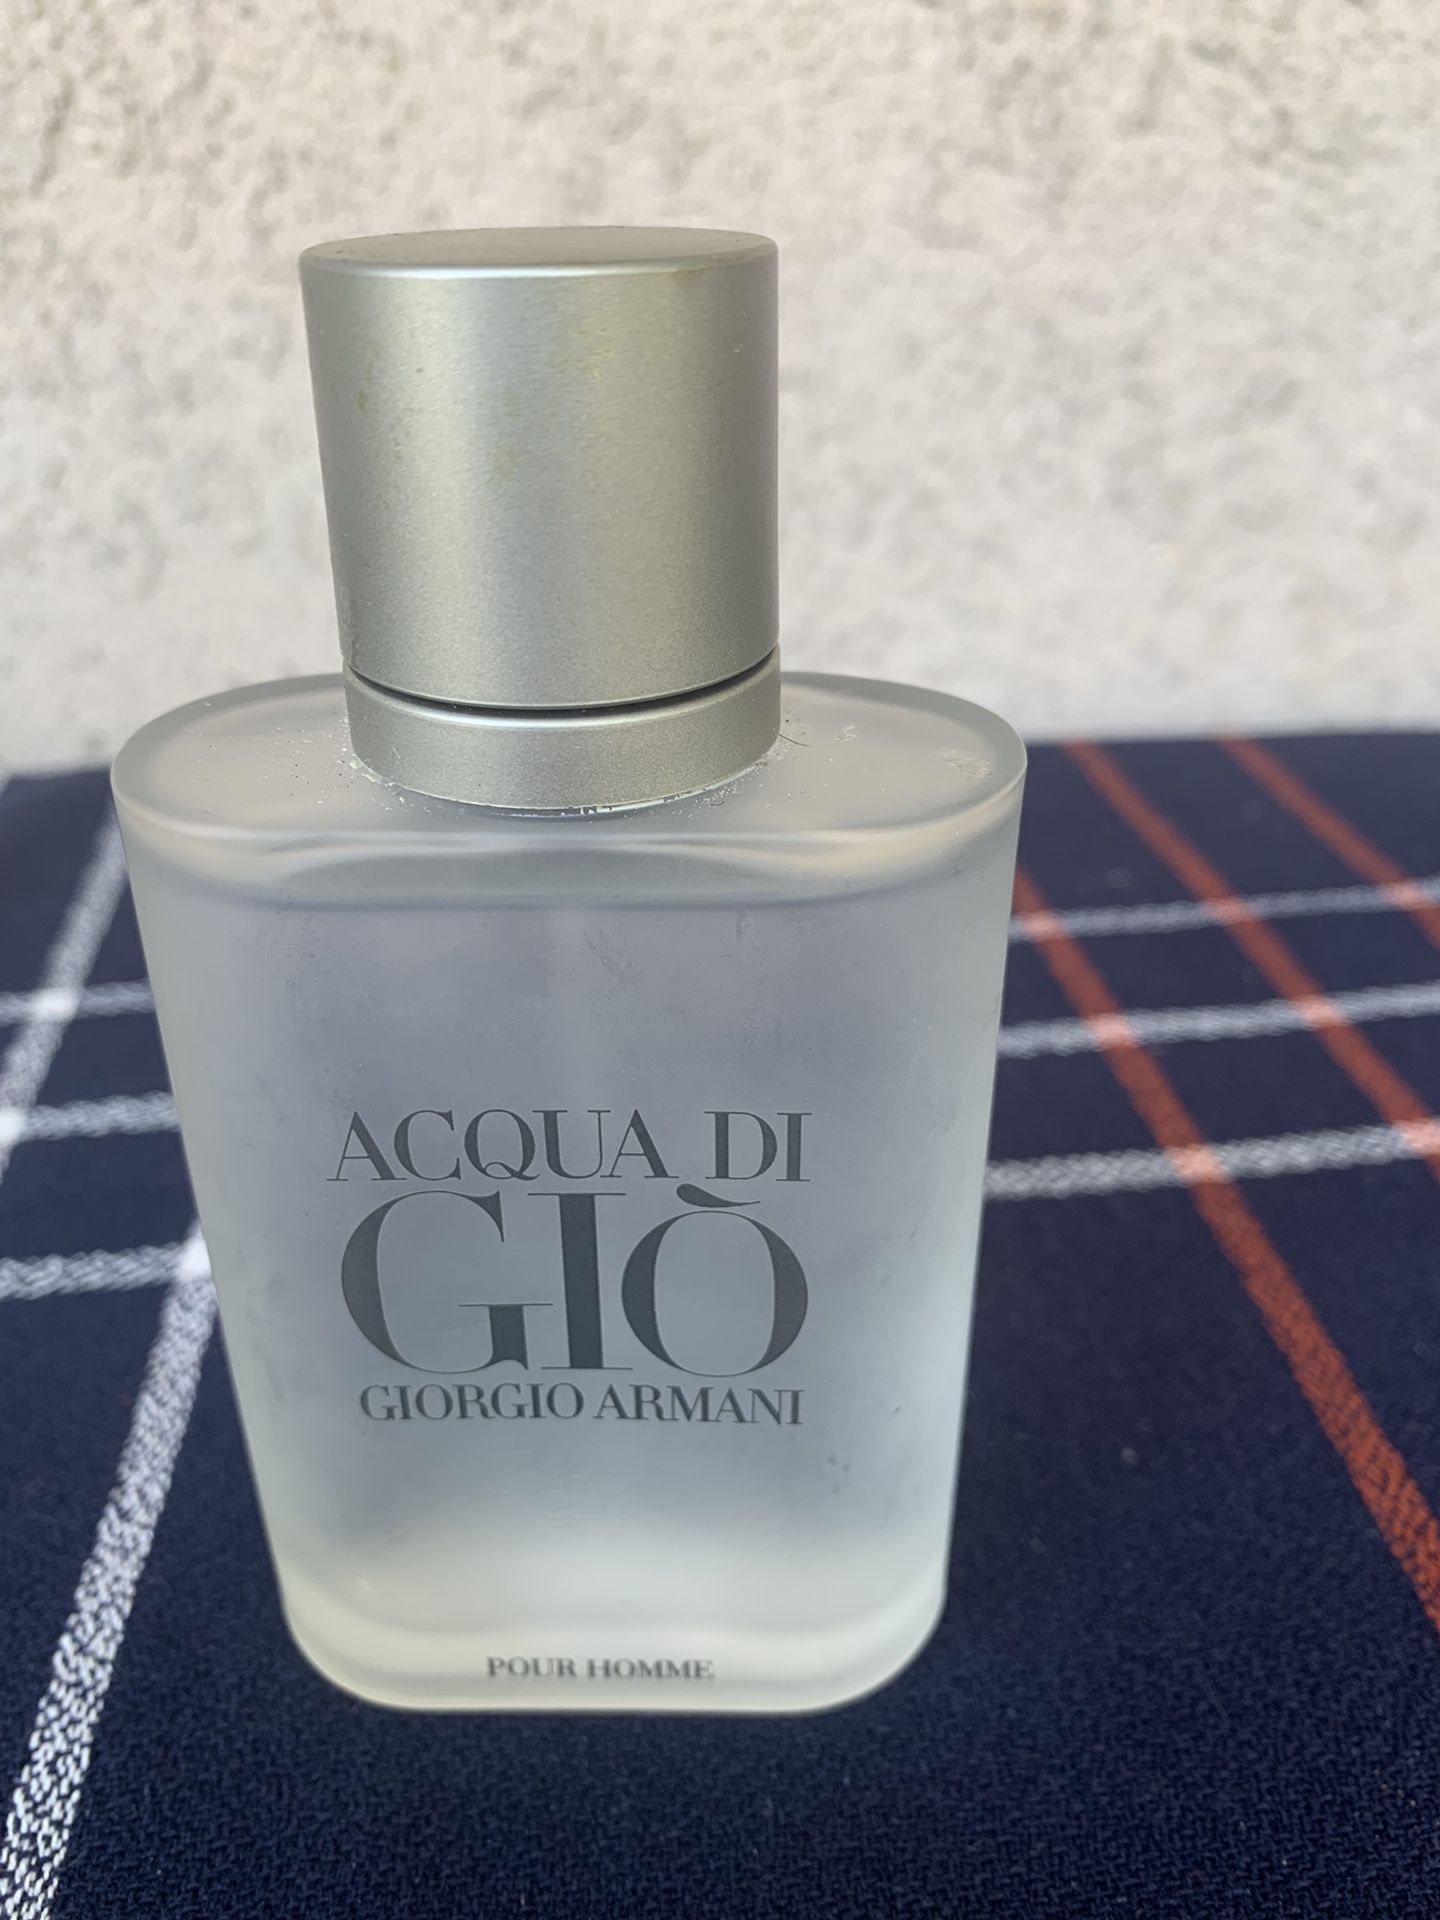 Aqua do gio perfume 3.4 oz used